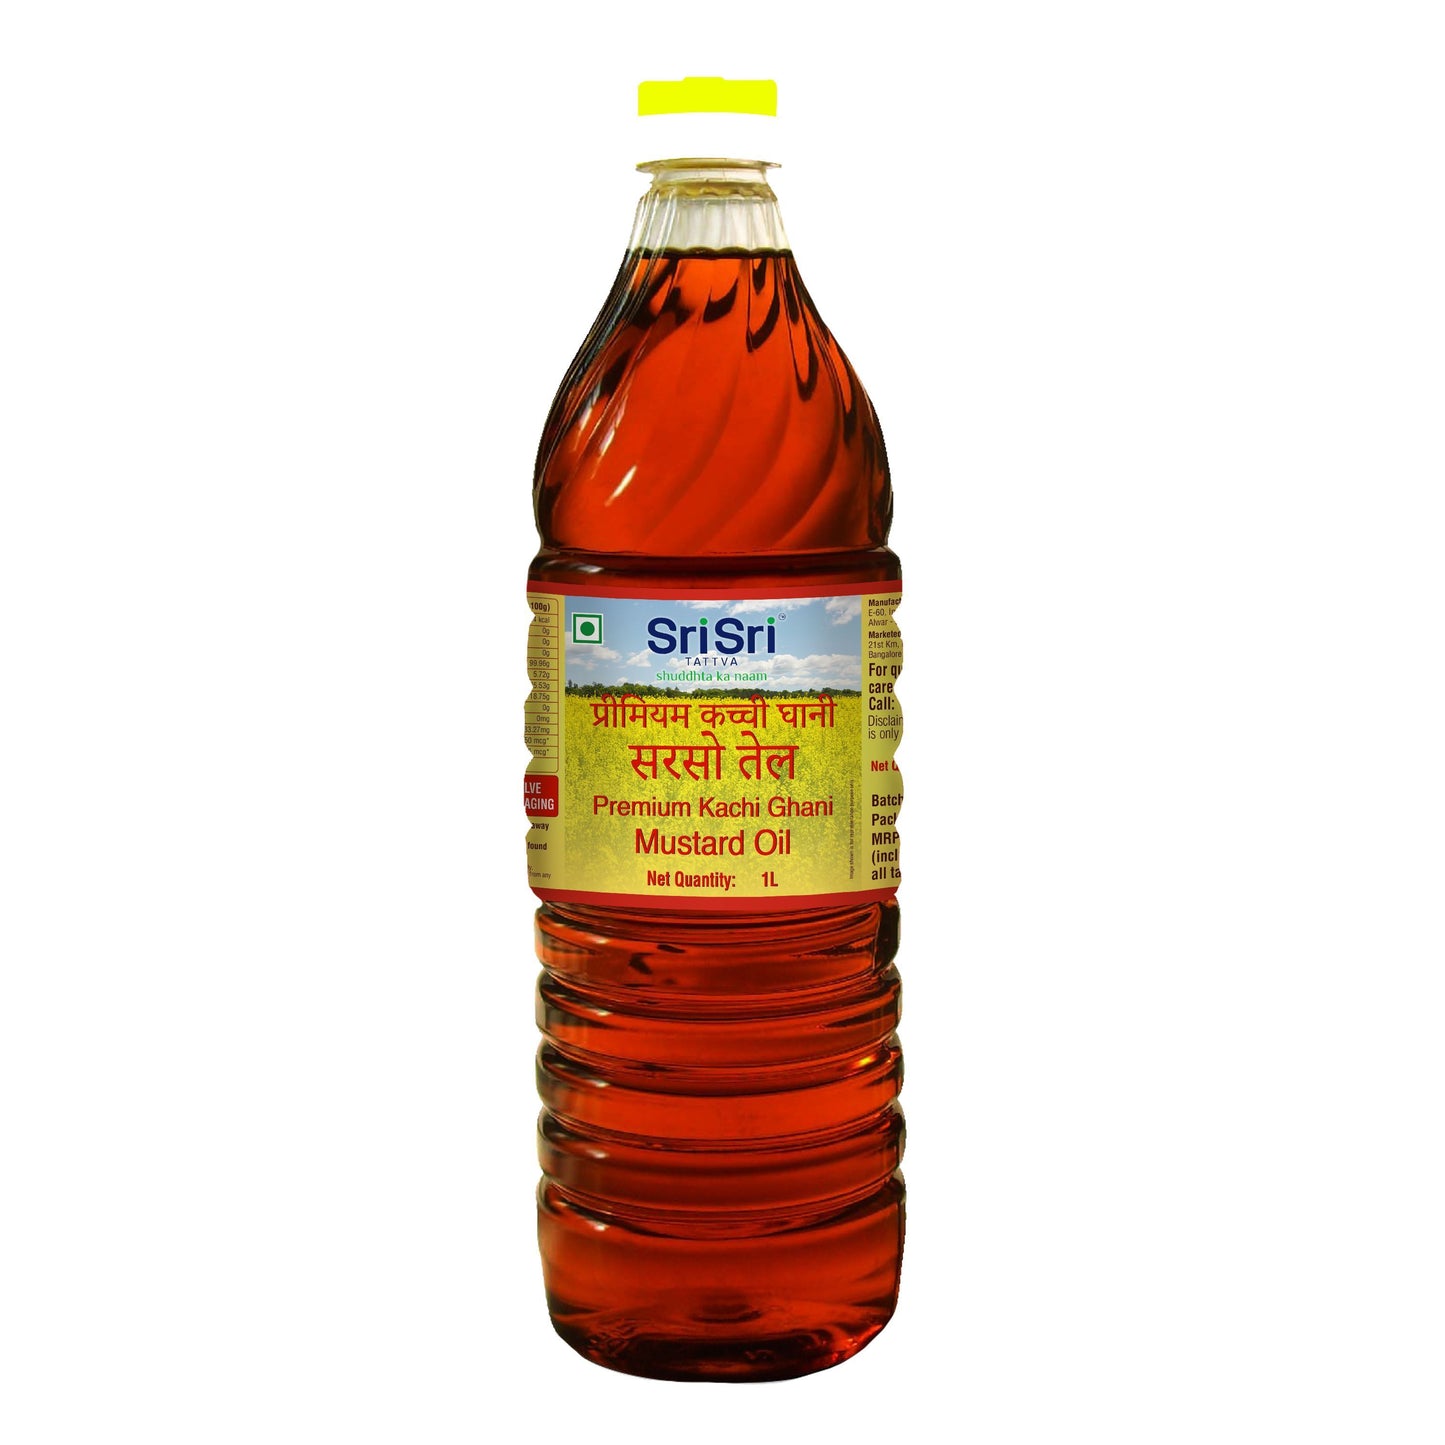 Premium Kachi Ghani Mustard Oil Bottle, 1L - Sri Sri Tattva